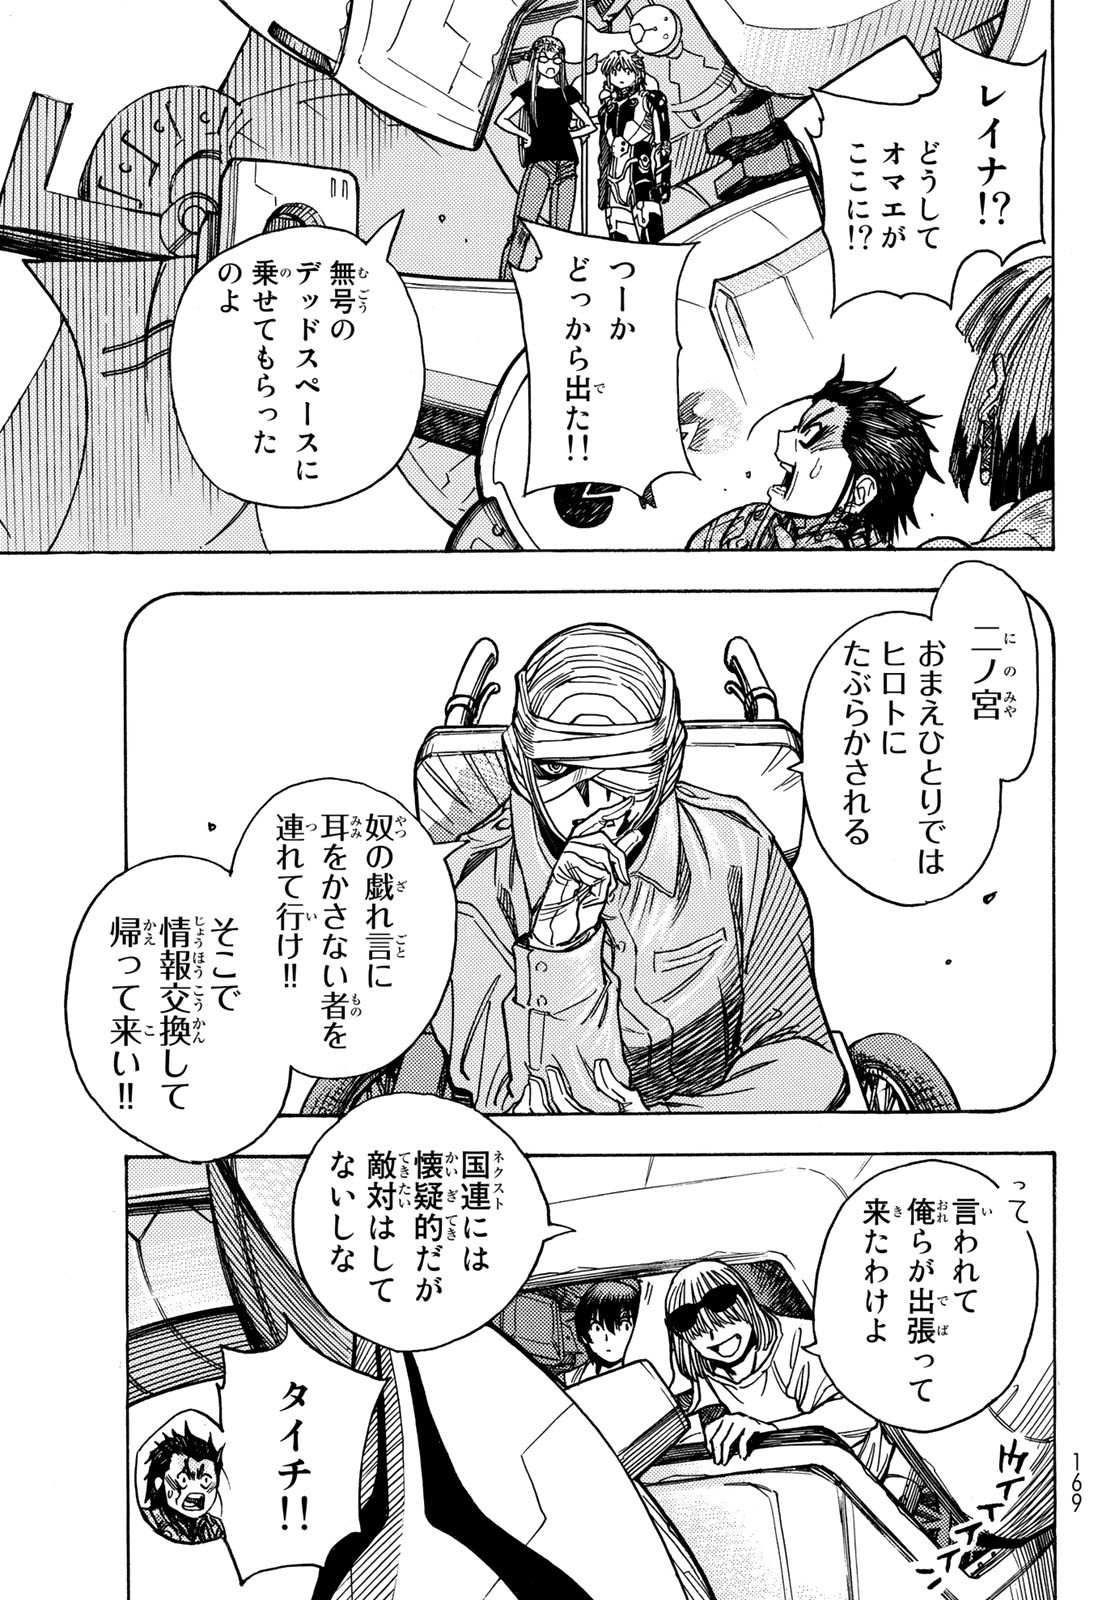 Mugou no Schnell Gear: Chikyuugai Kisouka AI - Chapter 48 - Page 15